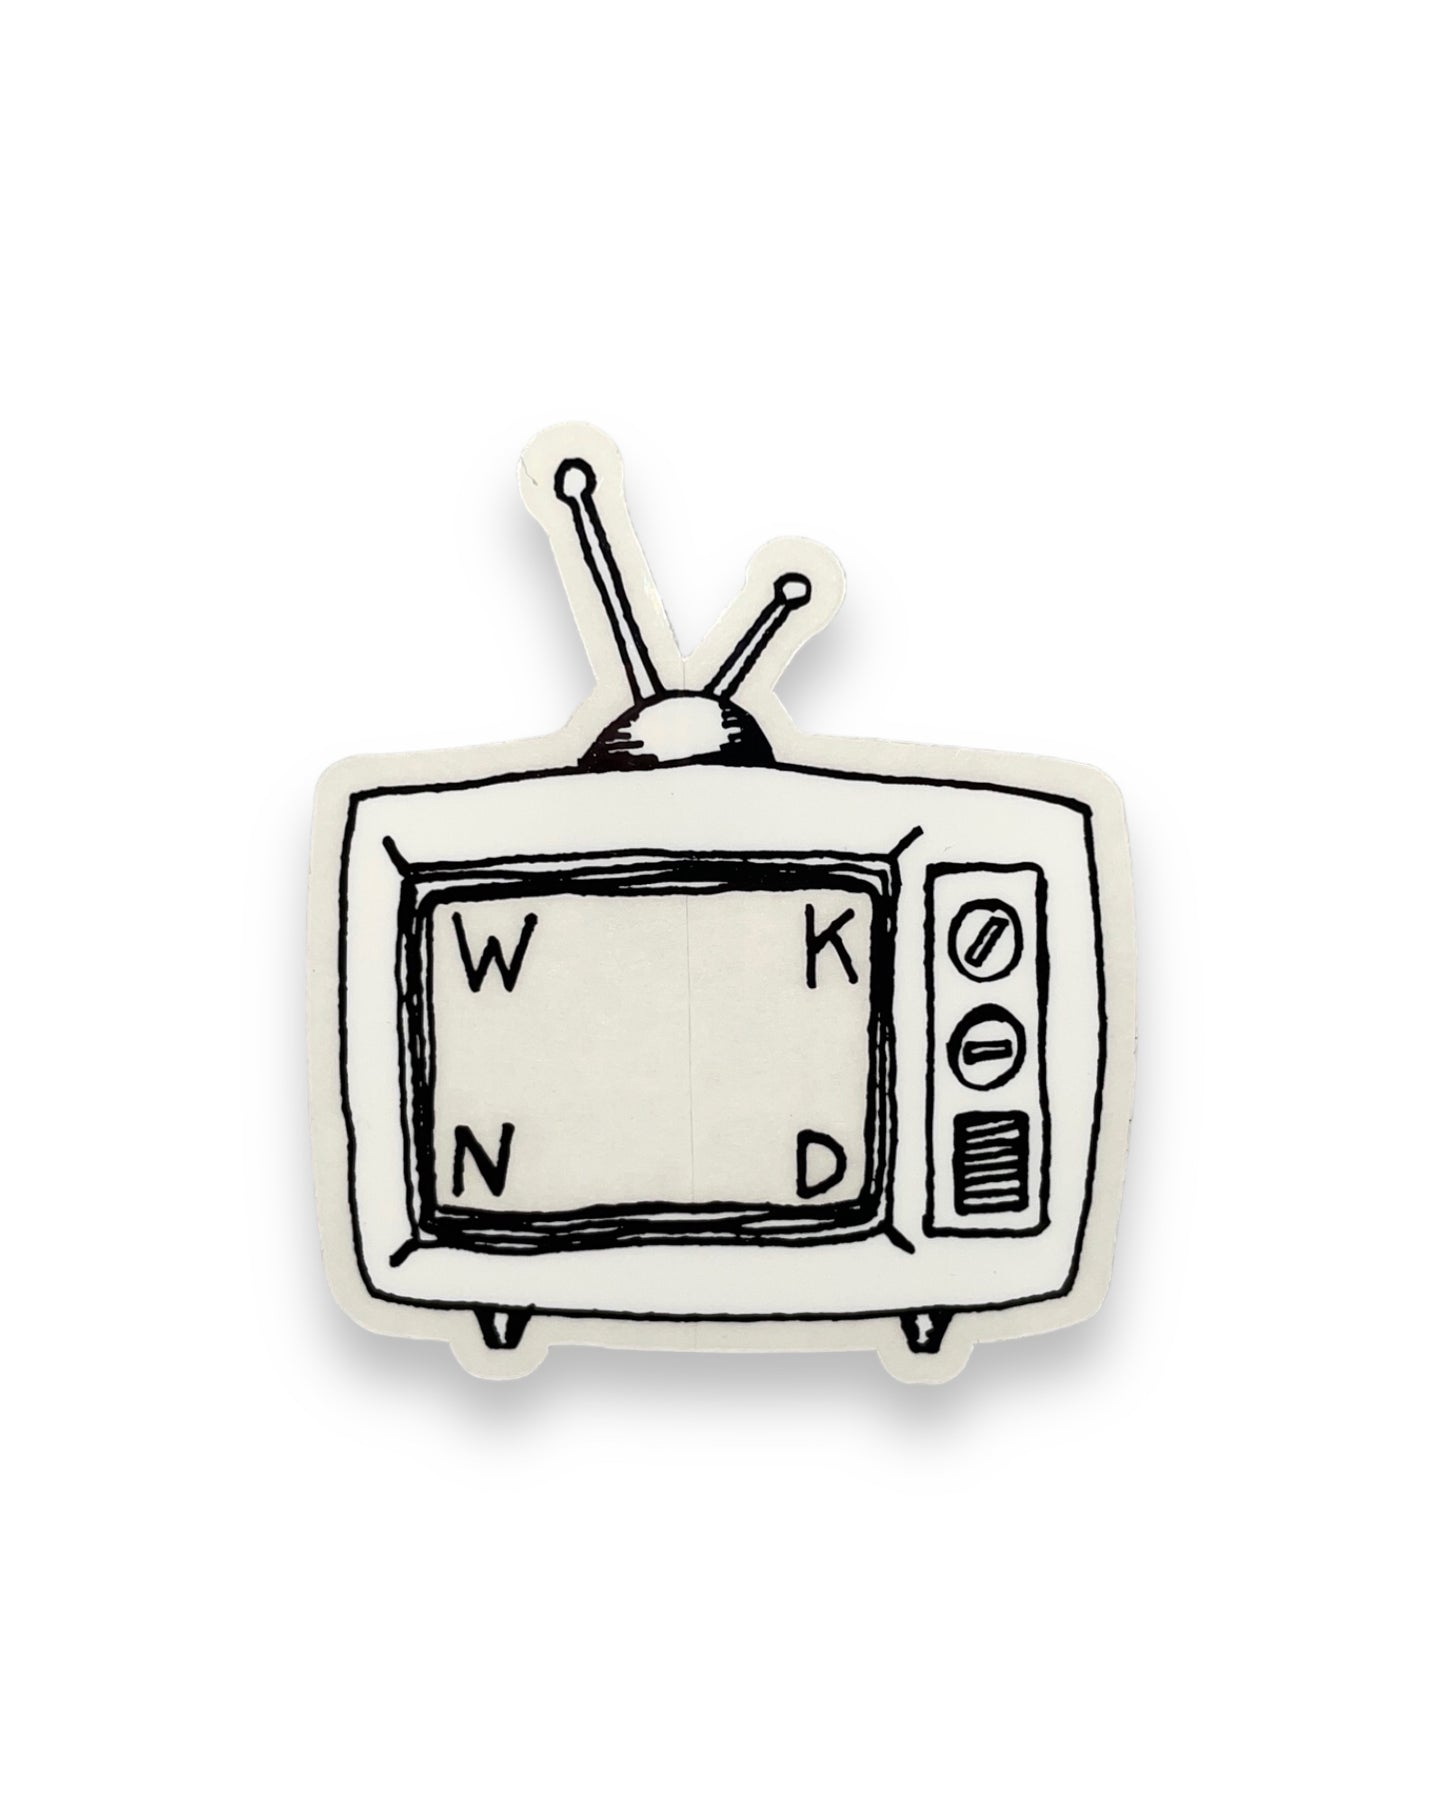 WKND | TV Small | Sticker